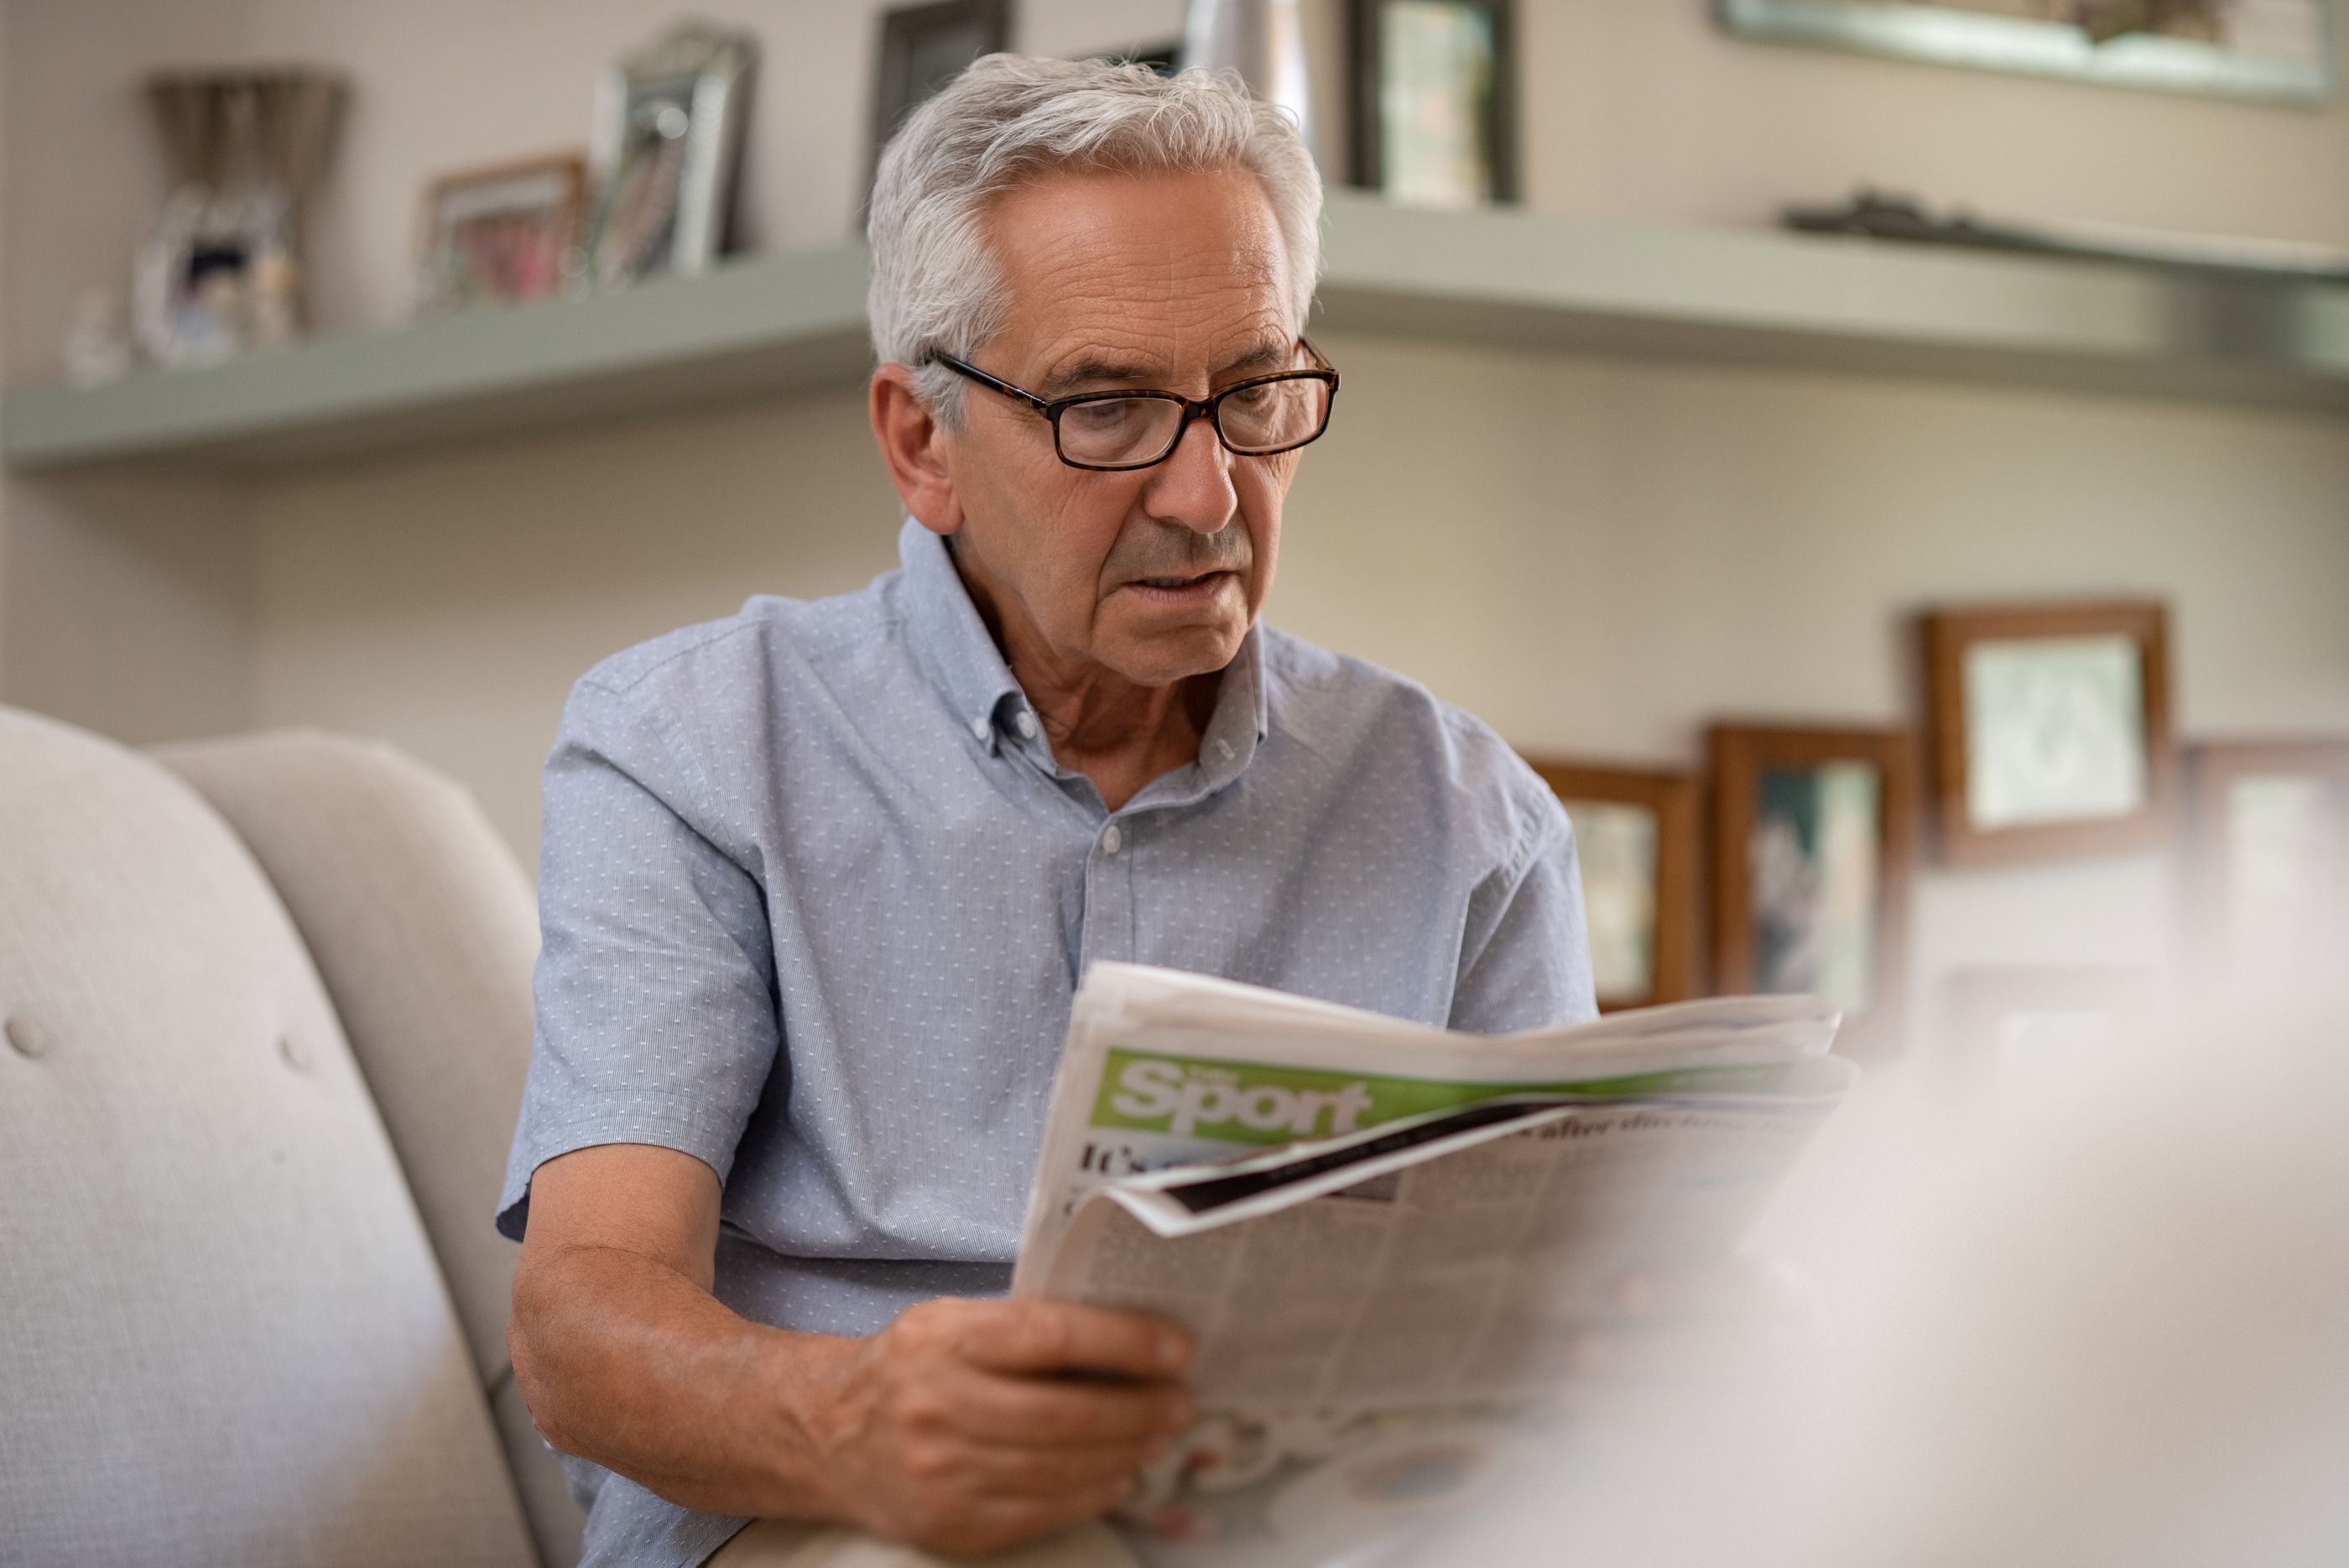 Consejos prácticos para cuidar la salud ocular. Persona adulta con gafas leyendo periódico a la distancia correcta (bigstock)